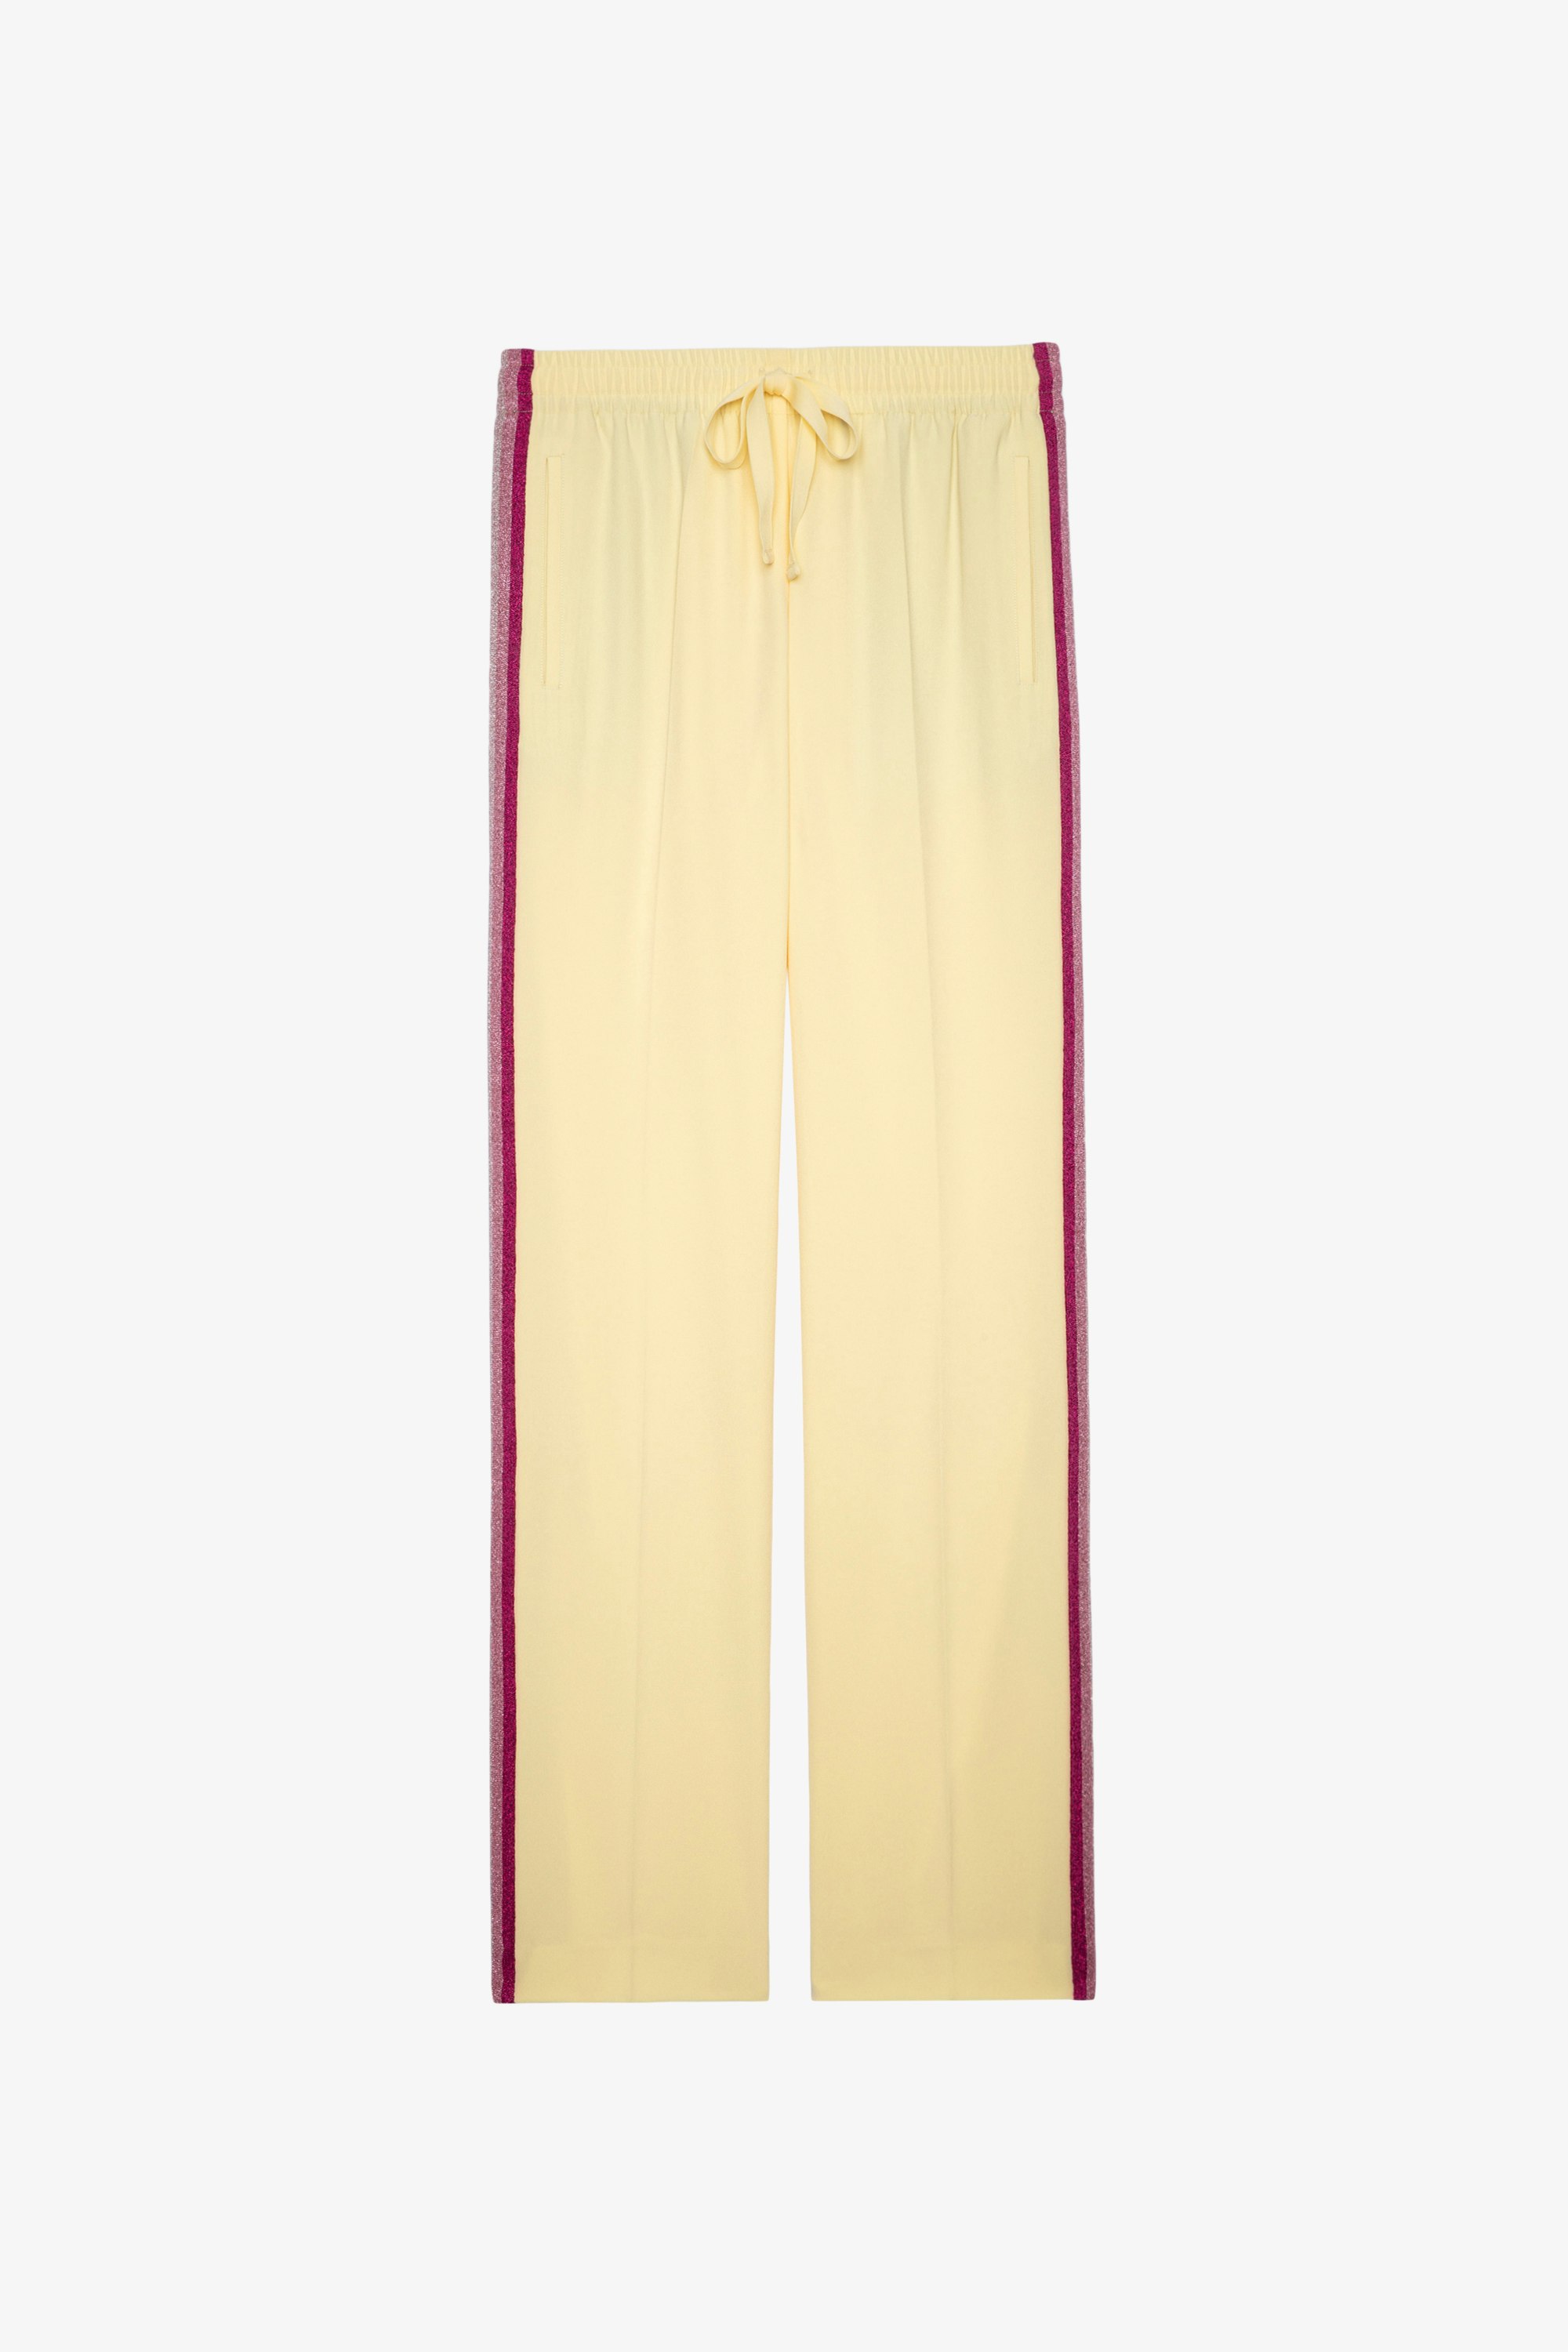 Hose Pomy Crêpe Fließende gelbe Hose mit seitlichen Glitzerstreifen für Damen